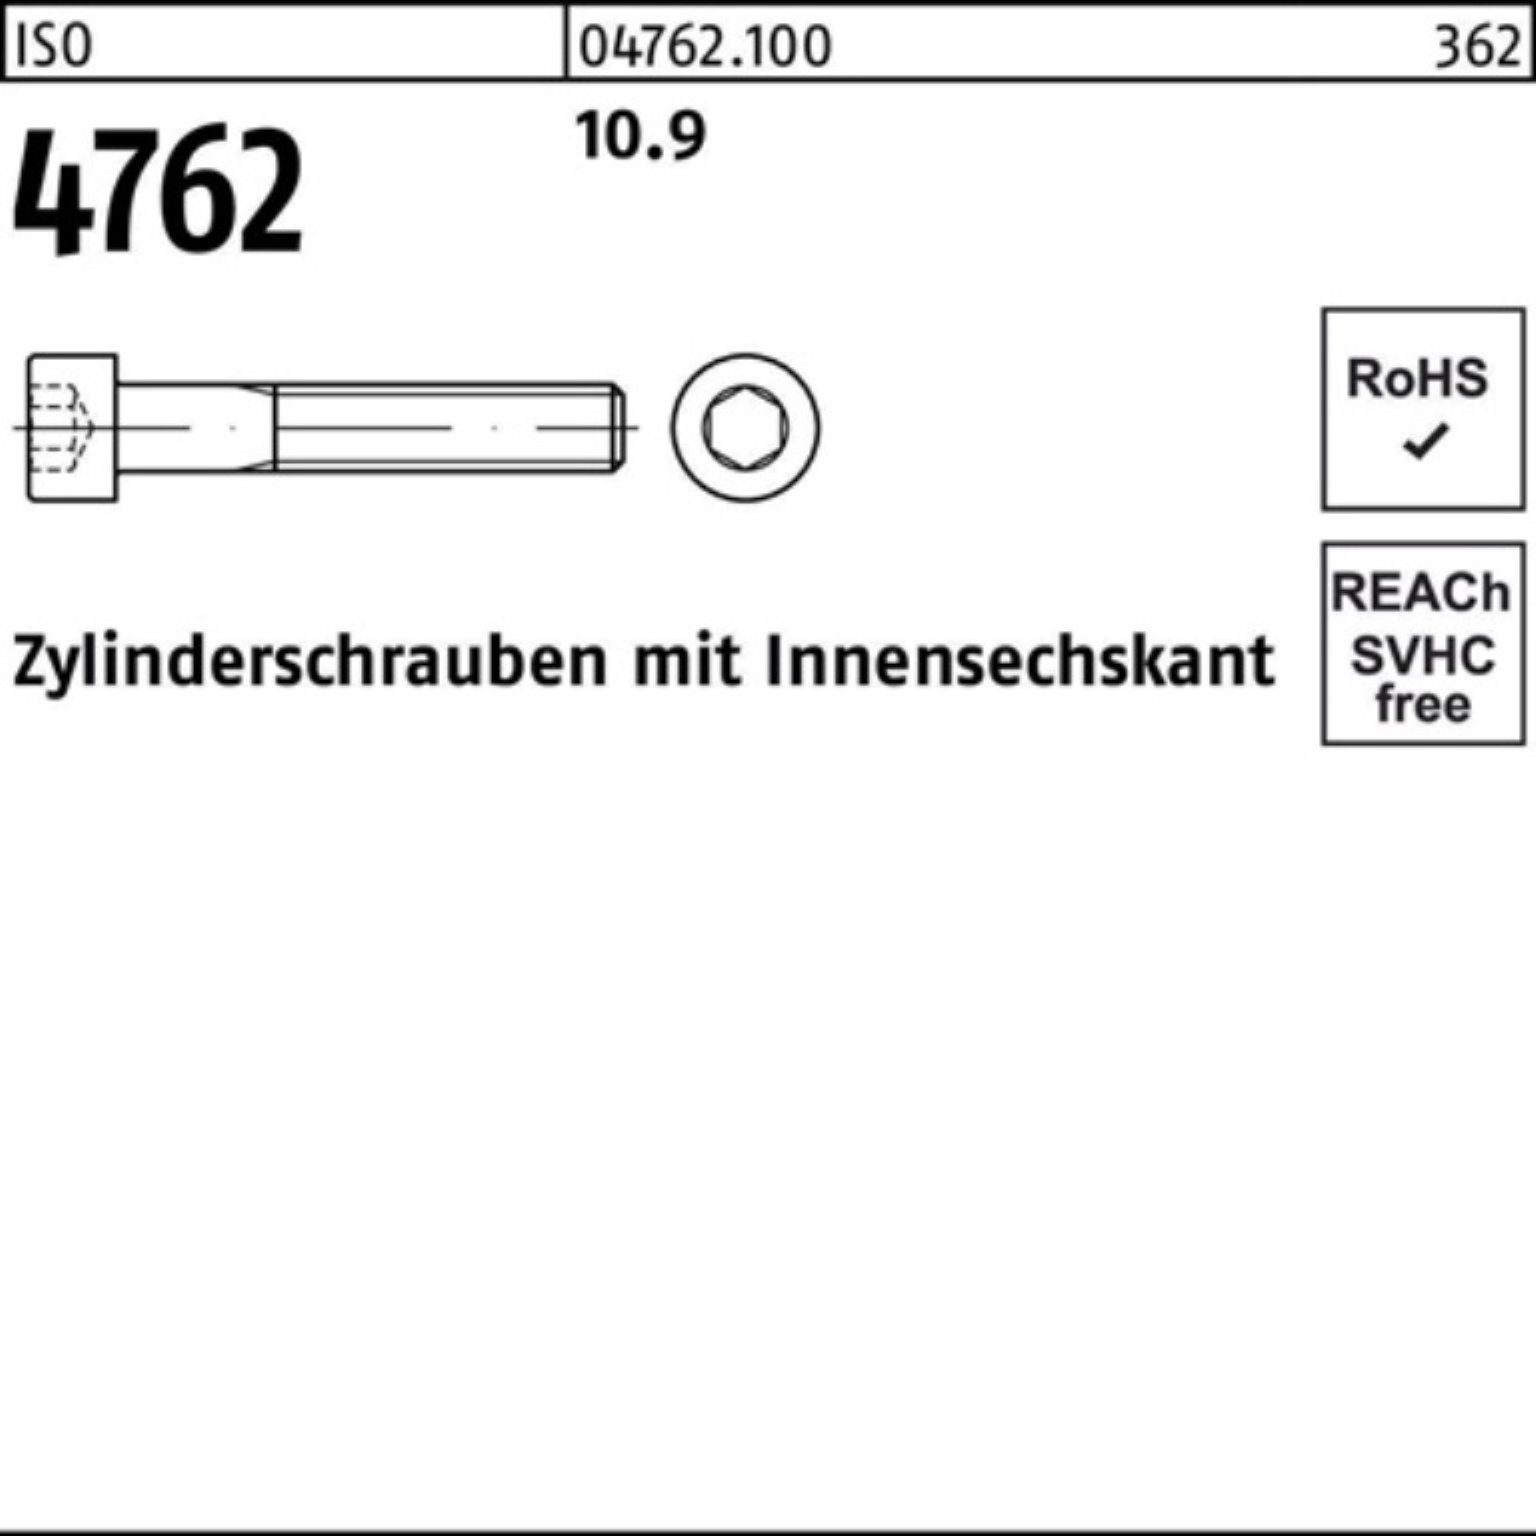 330 100er Zylinderschraube M24x Innen-6kt Zylinderschraube 1 Stück ISO Pack Reyher 4762 10.9